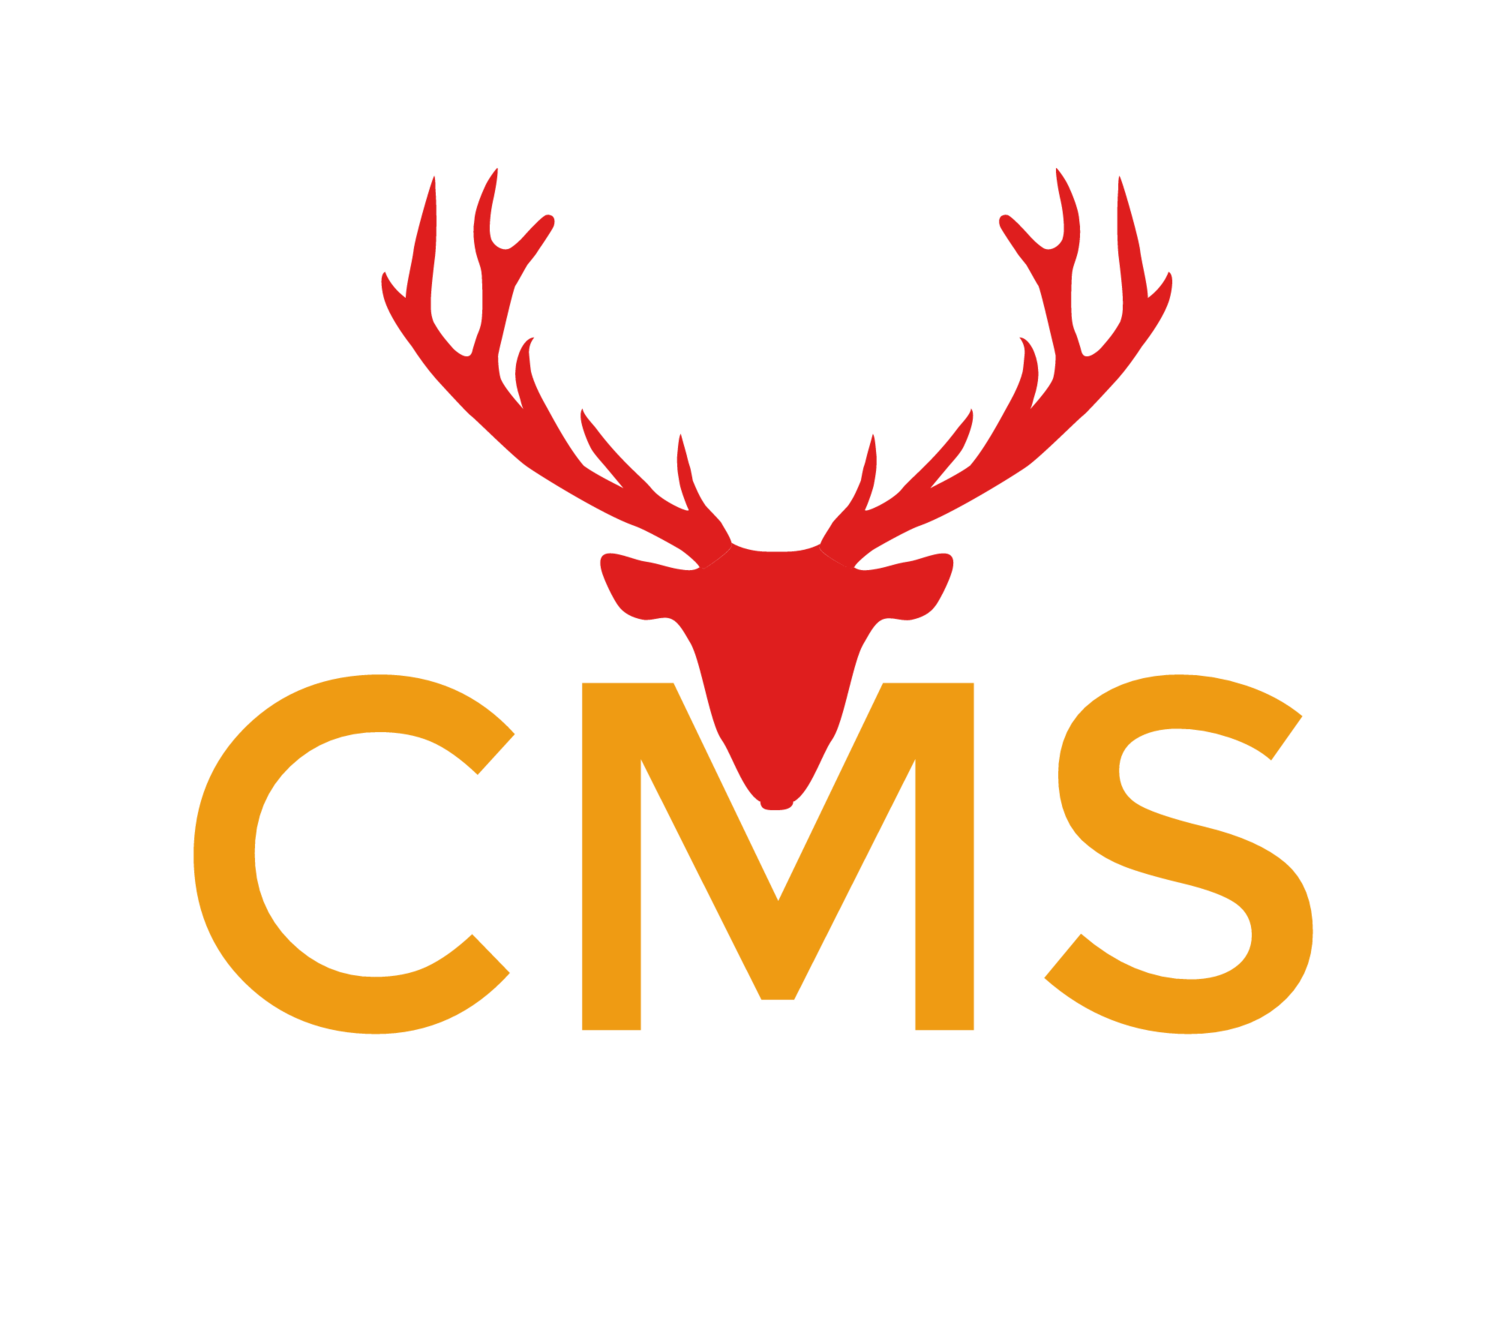 Company logo of Cms of Colorado Springs